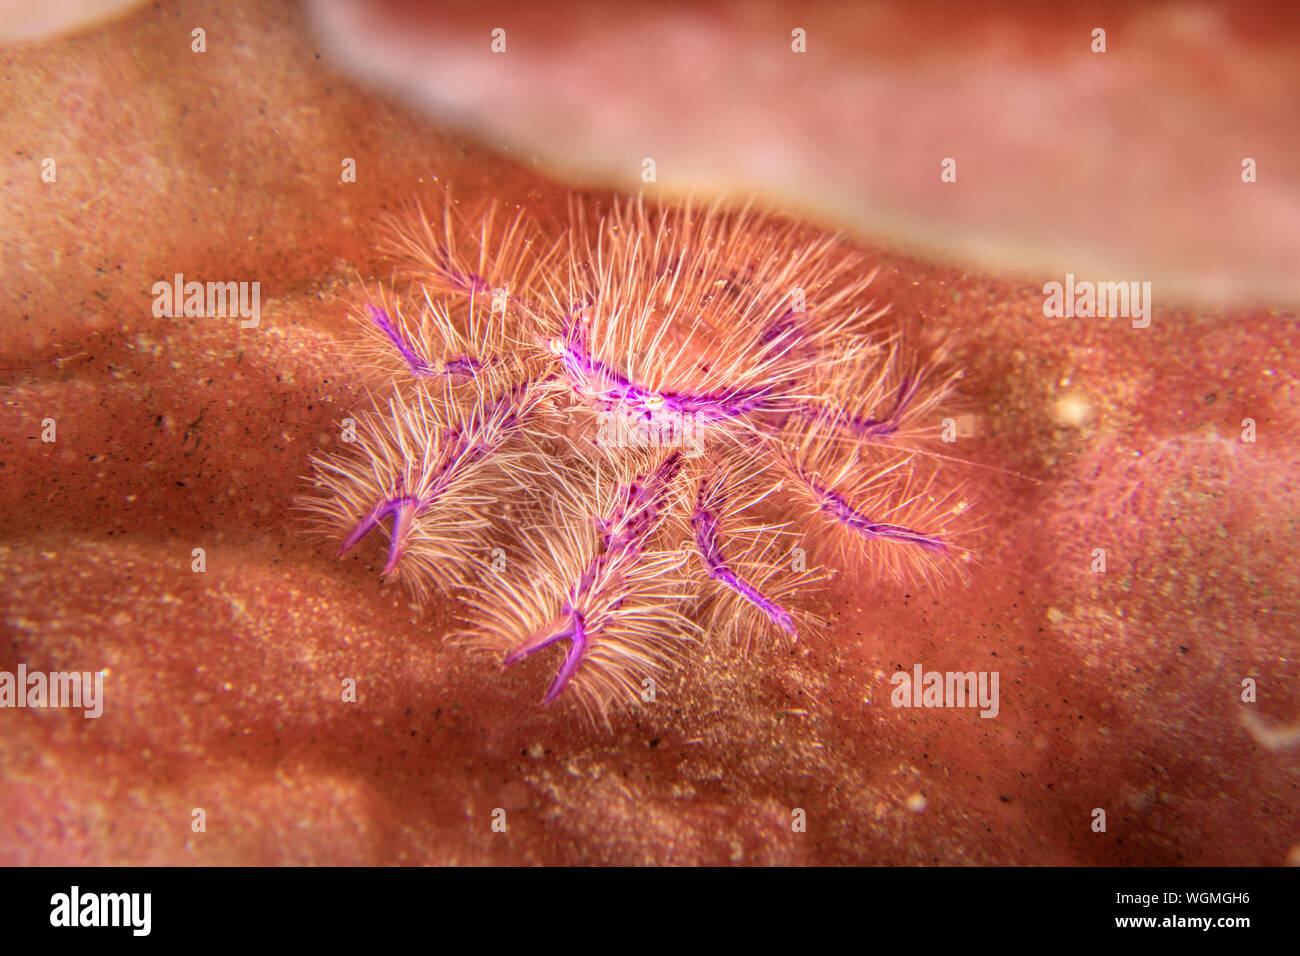 Un beau violet et rose hairy squat lobster se cache dans une crevasse sur une éponge. Banque D'Images